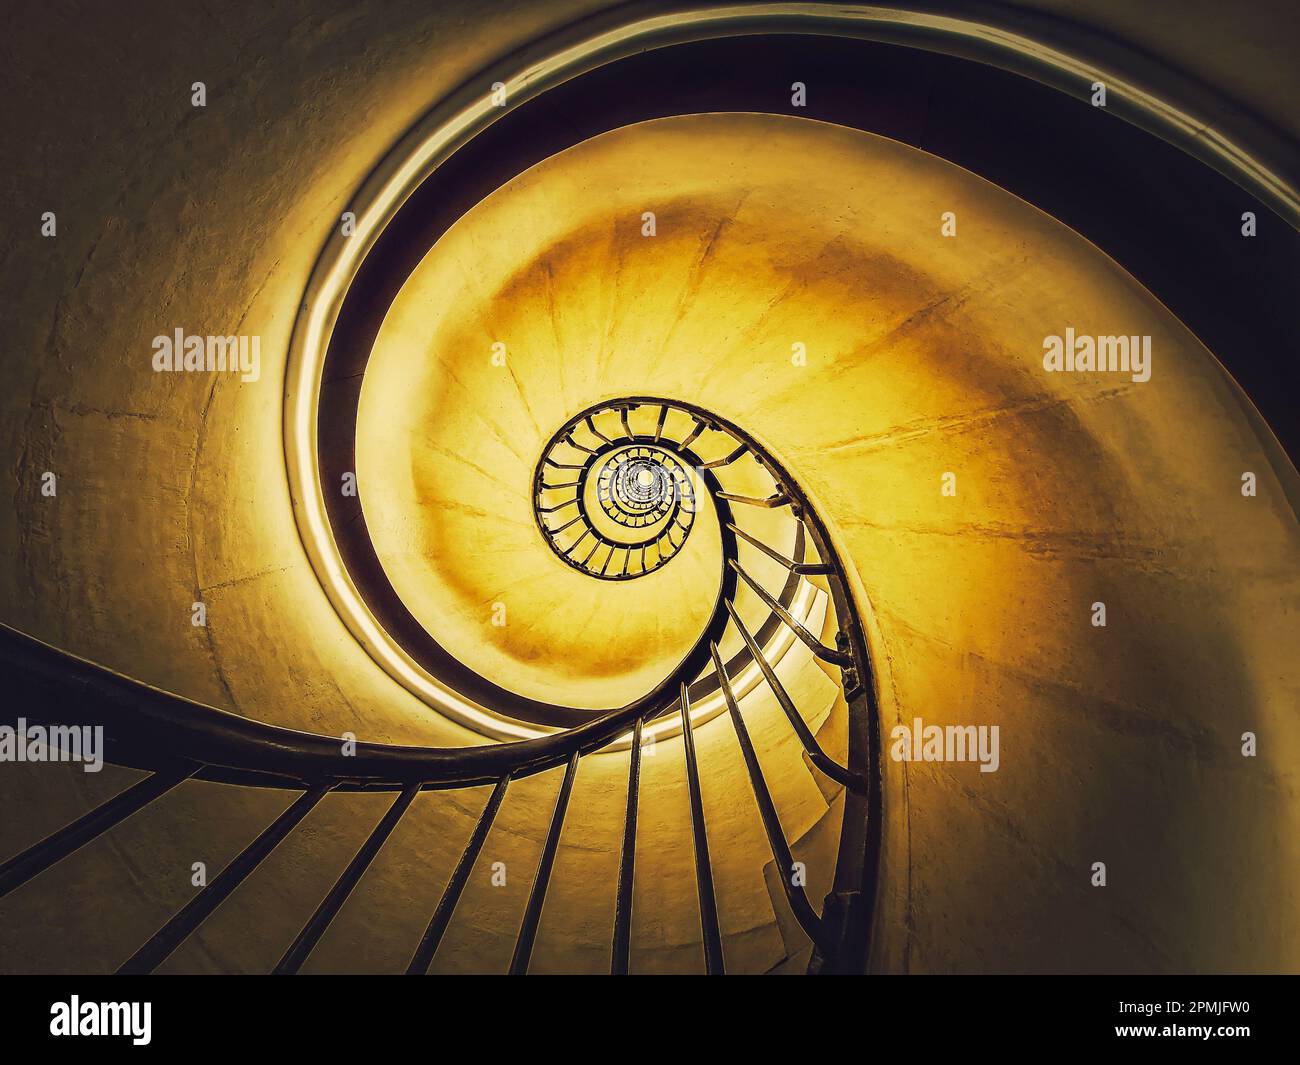 Spiraltreppe abstrakt wirbelnde hypnotisierende Perspektive. Blick von unten auf unendlich kreisförmige Treppen, die im gelben hellen Hintergrund leuchten Stockfoto